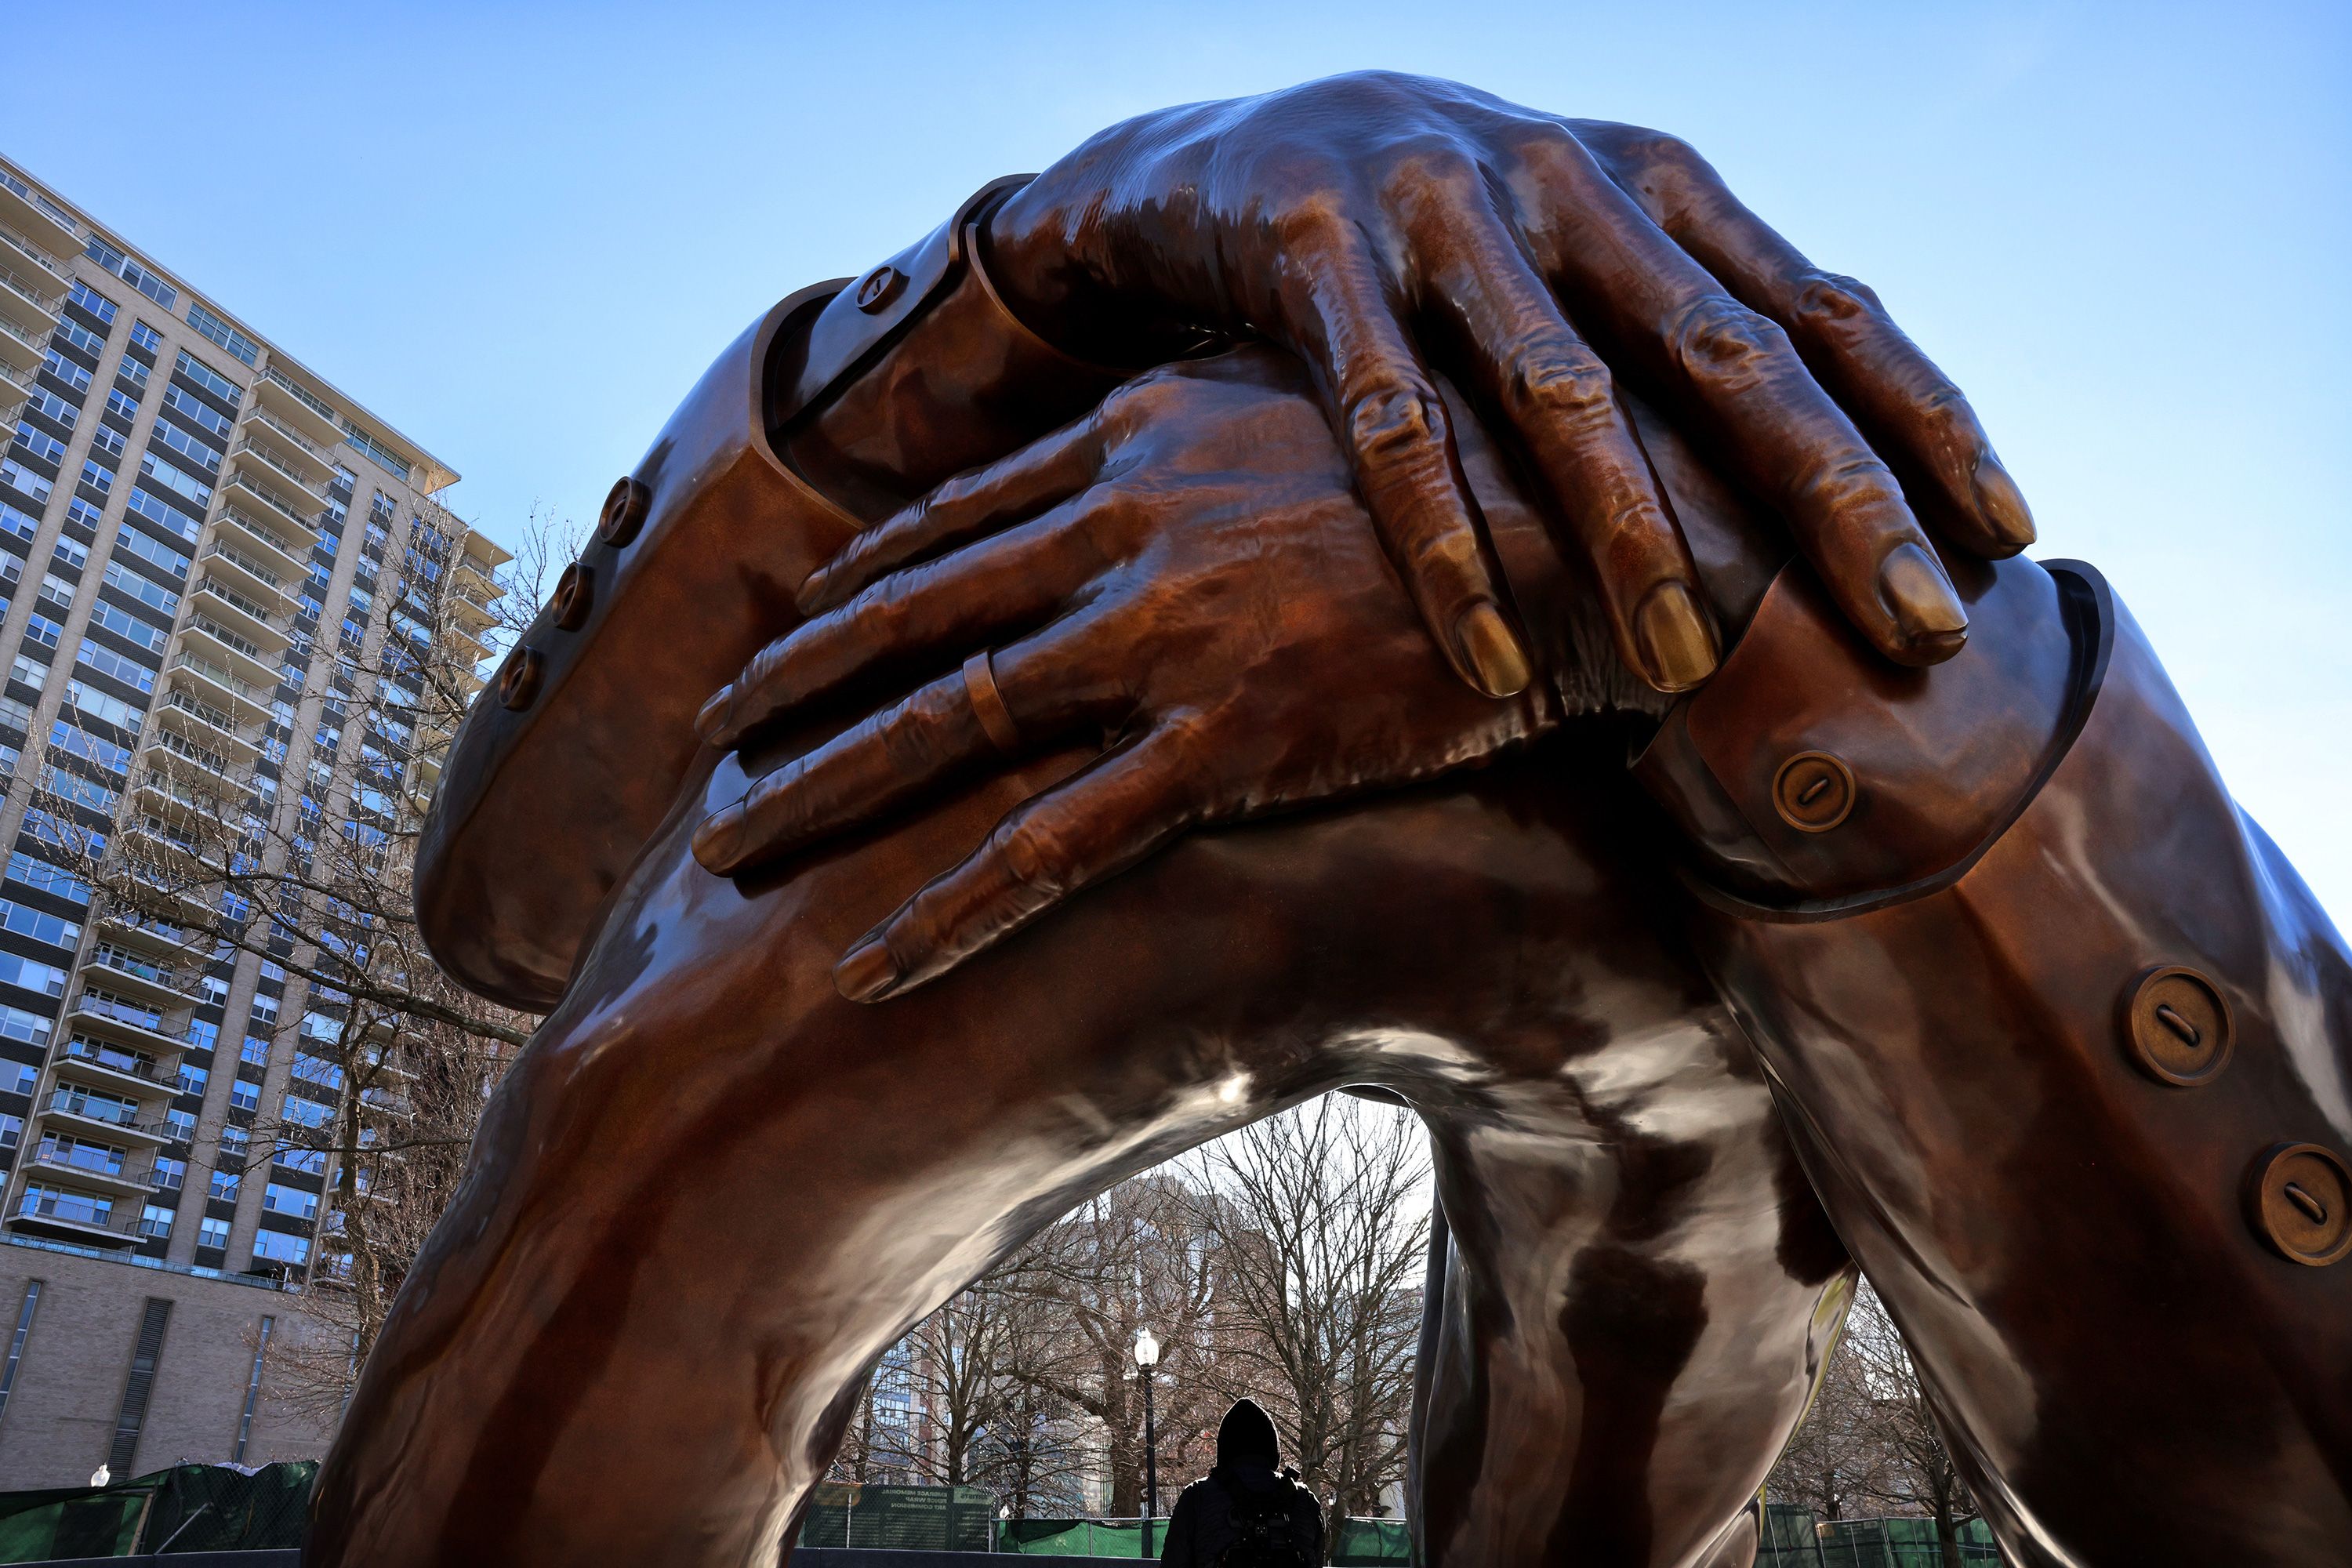 Hand Statueheart Hands Sculpture Love Pose Sculptureabstract Hand